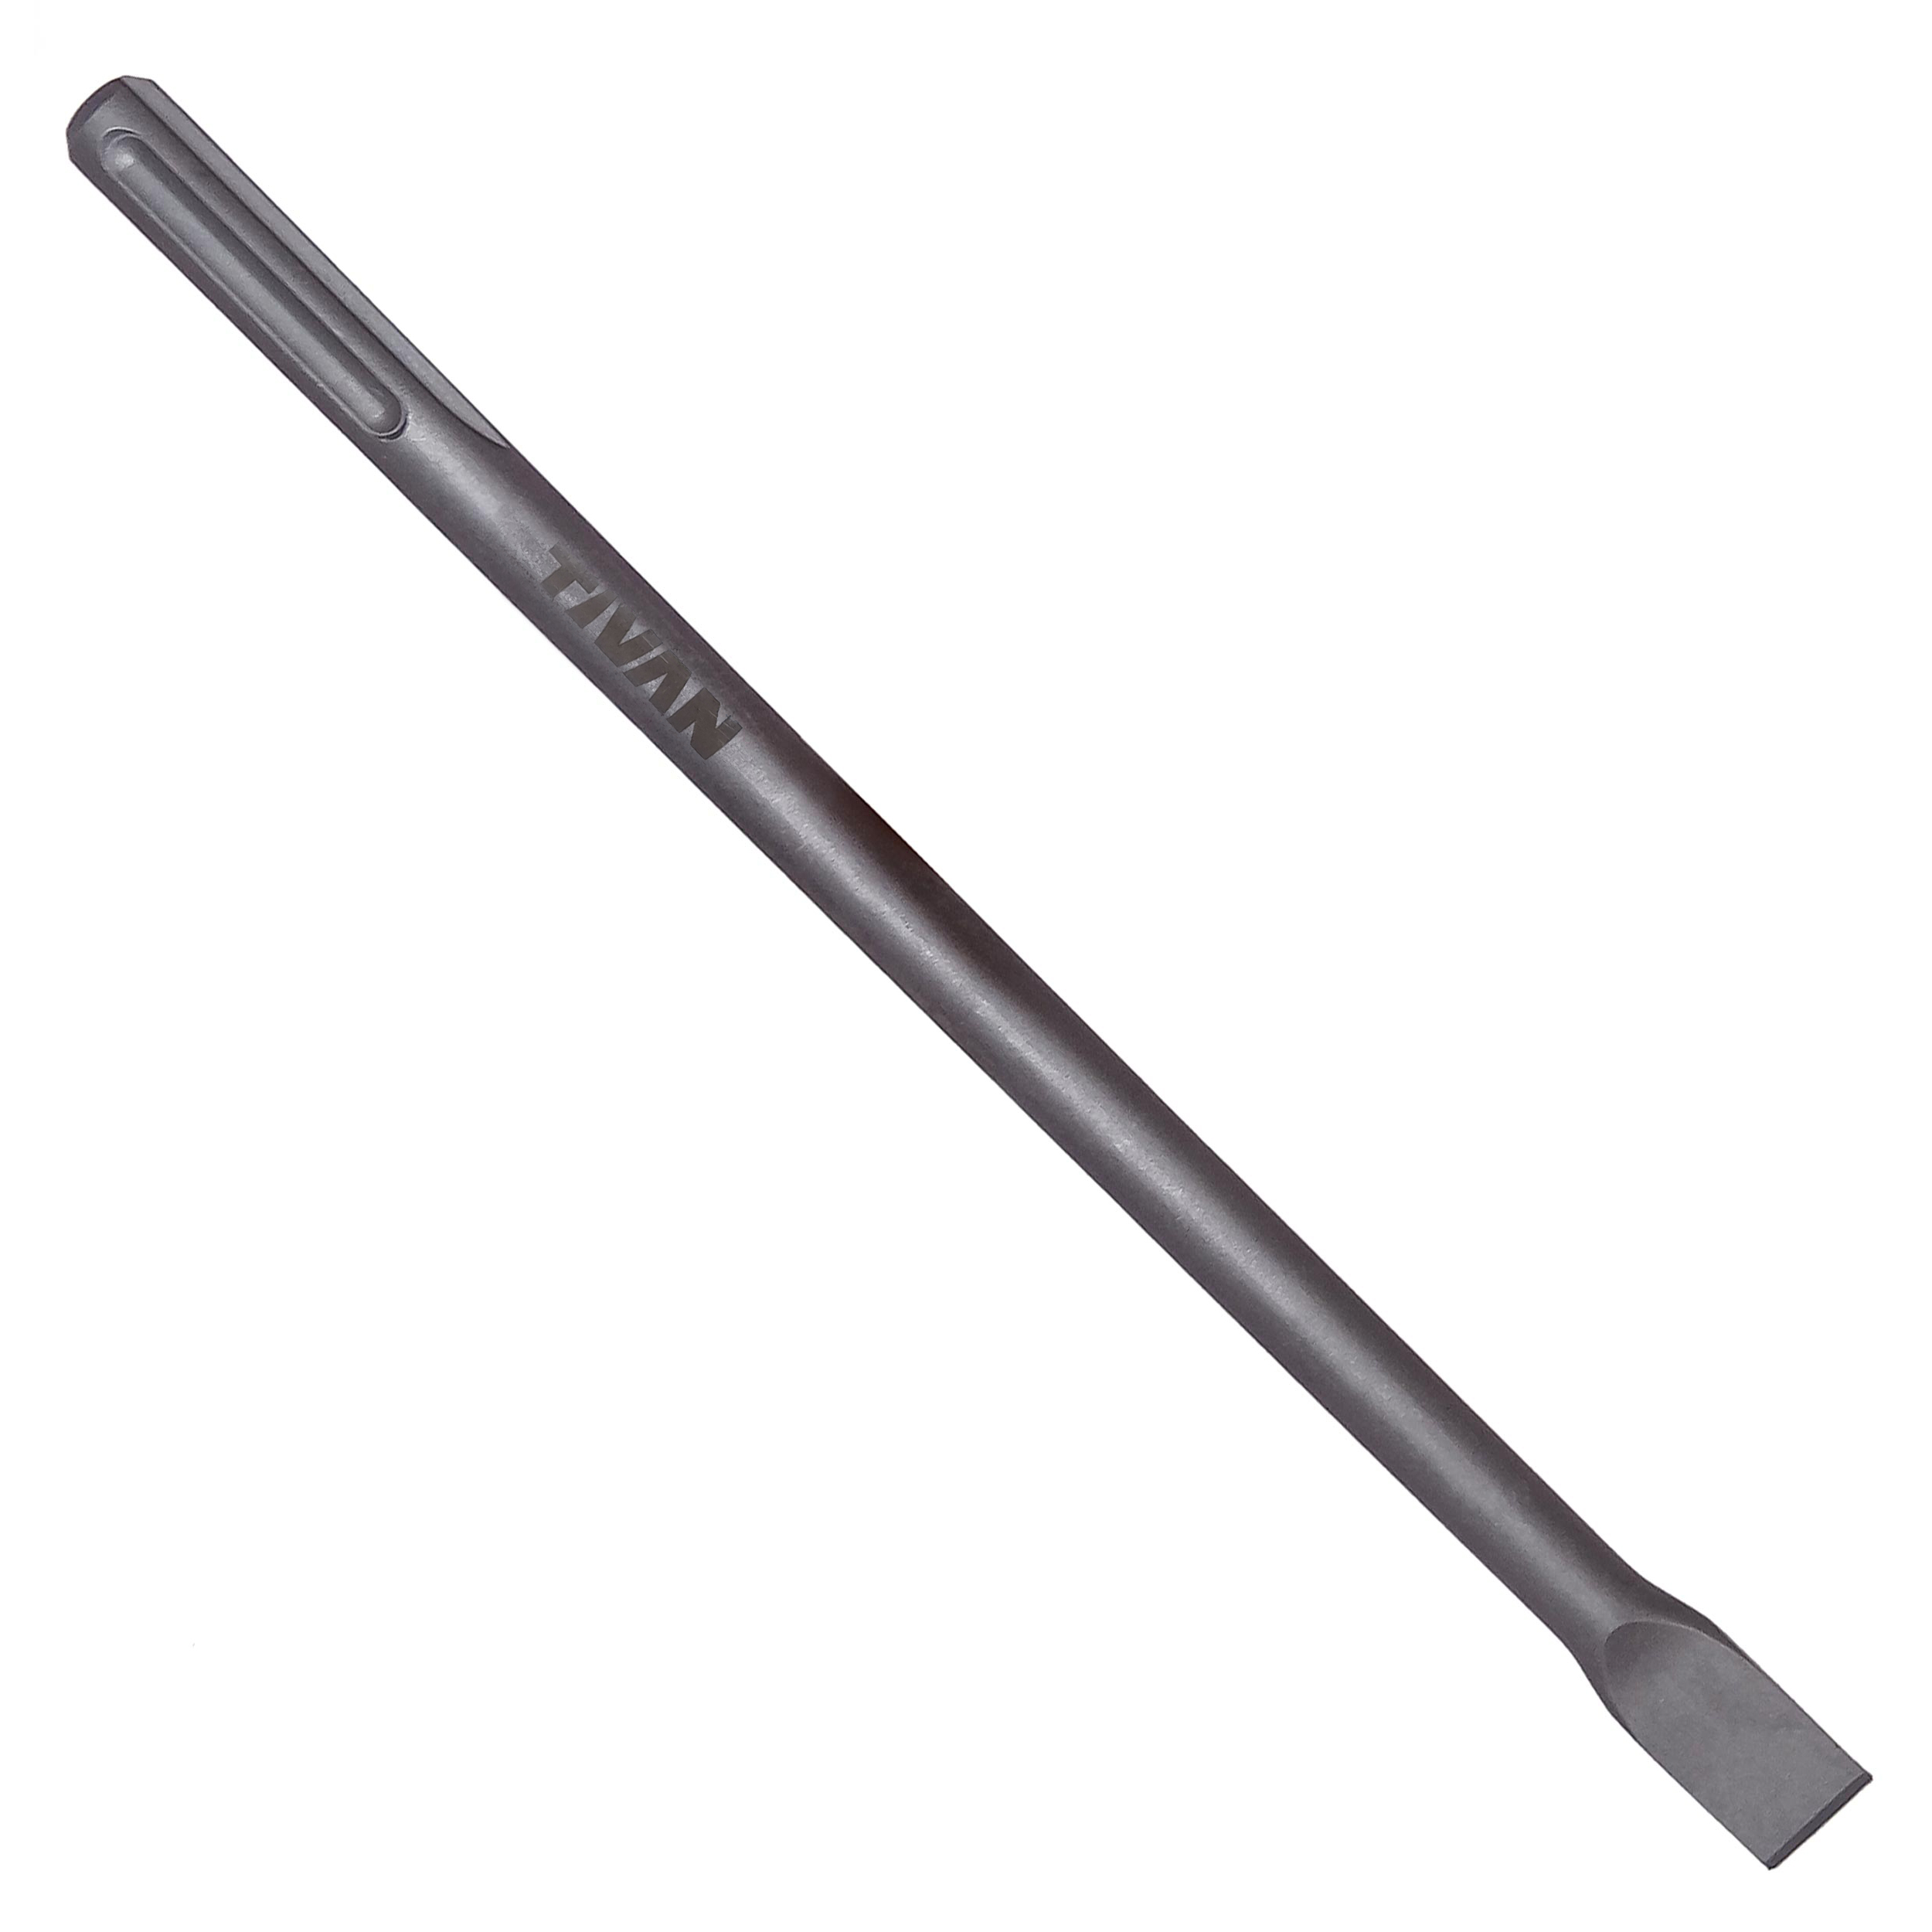 قلم پنج شیار تخت تیوان مدل ART-TN-5T40 سایز 40 سانتیمتر